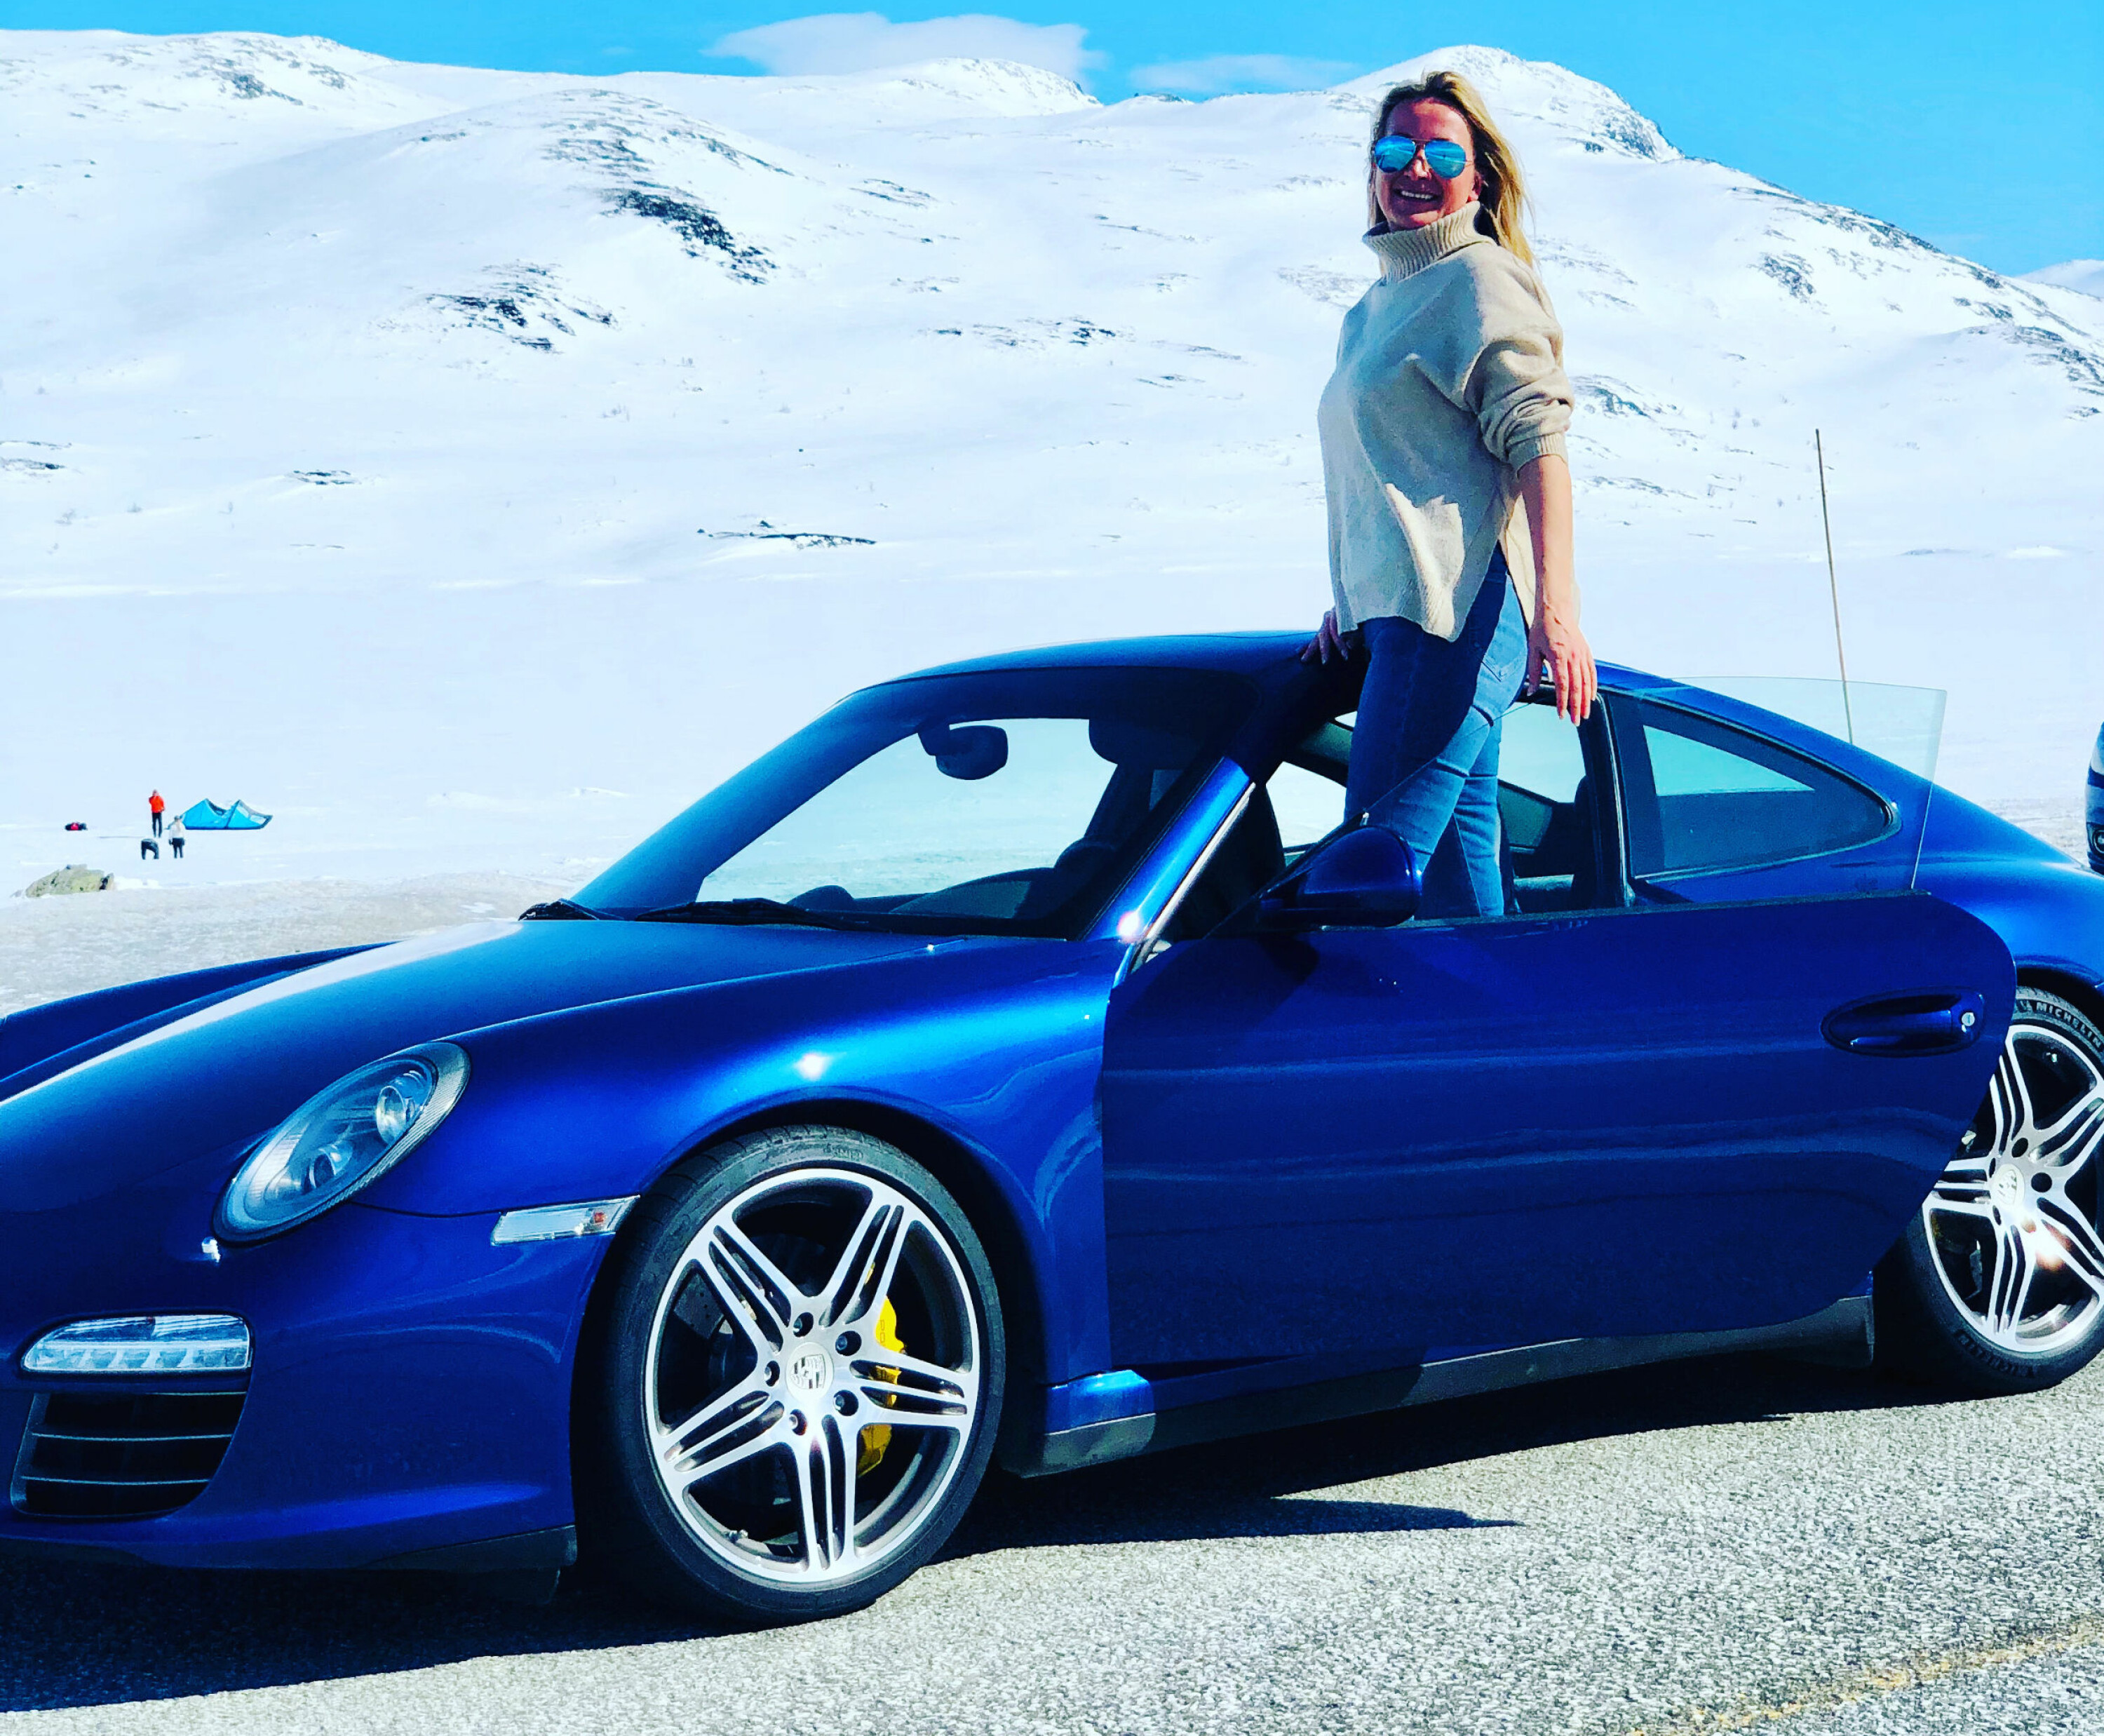 PÅ HØYDEN: Kimen til Kari Huebners Porsche-pasjon startet da hun som 18-åring bodde i Østerrike og observerte den aldrende Louise Piech, datteren til Ferdinand Porsche, i en flott sølvgrå 911.